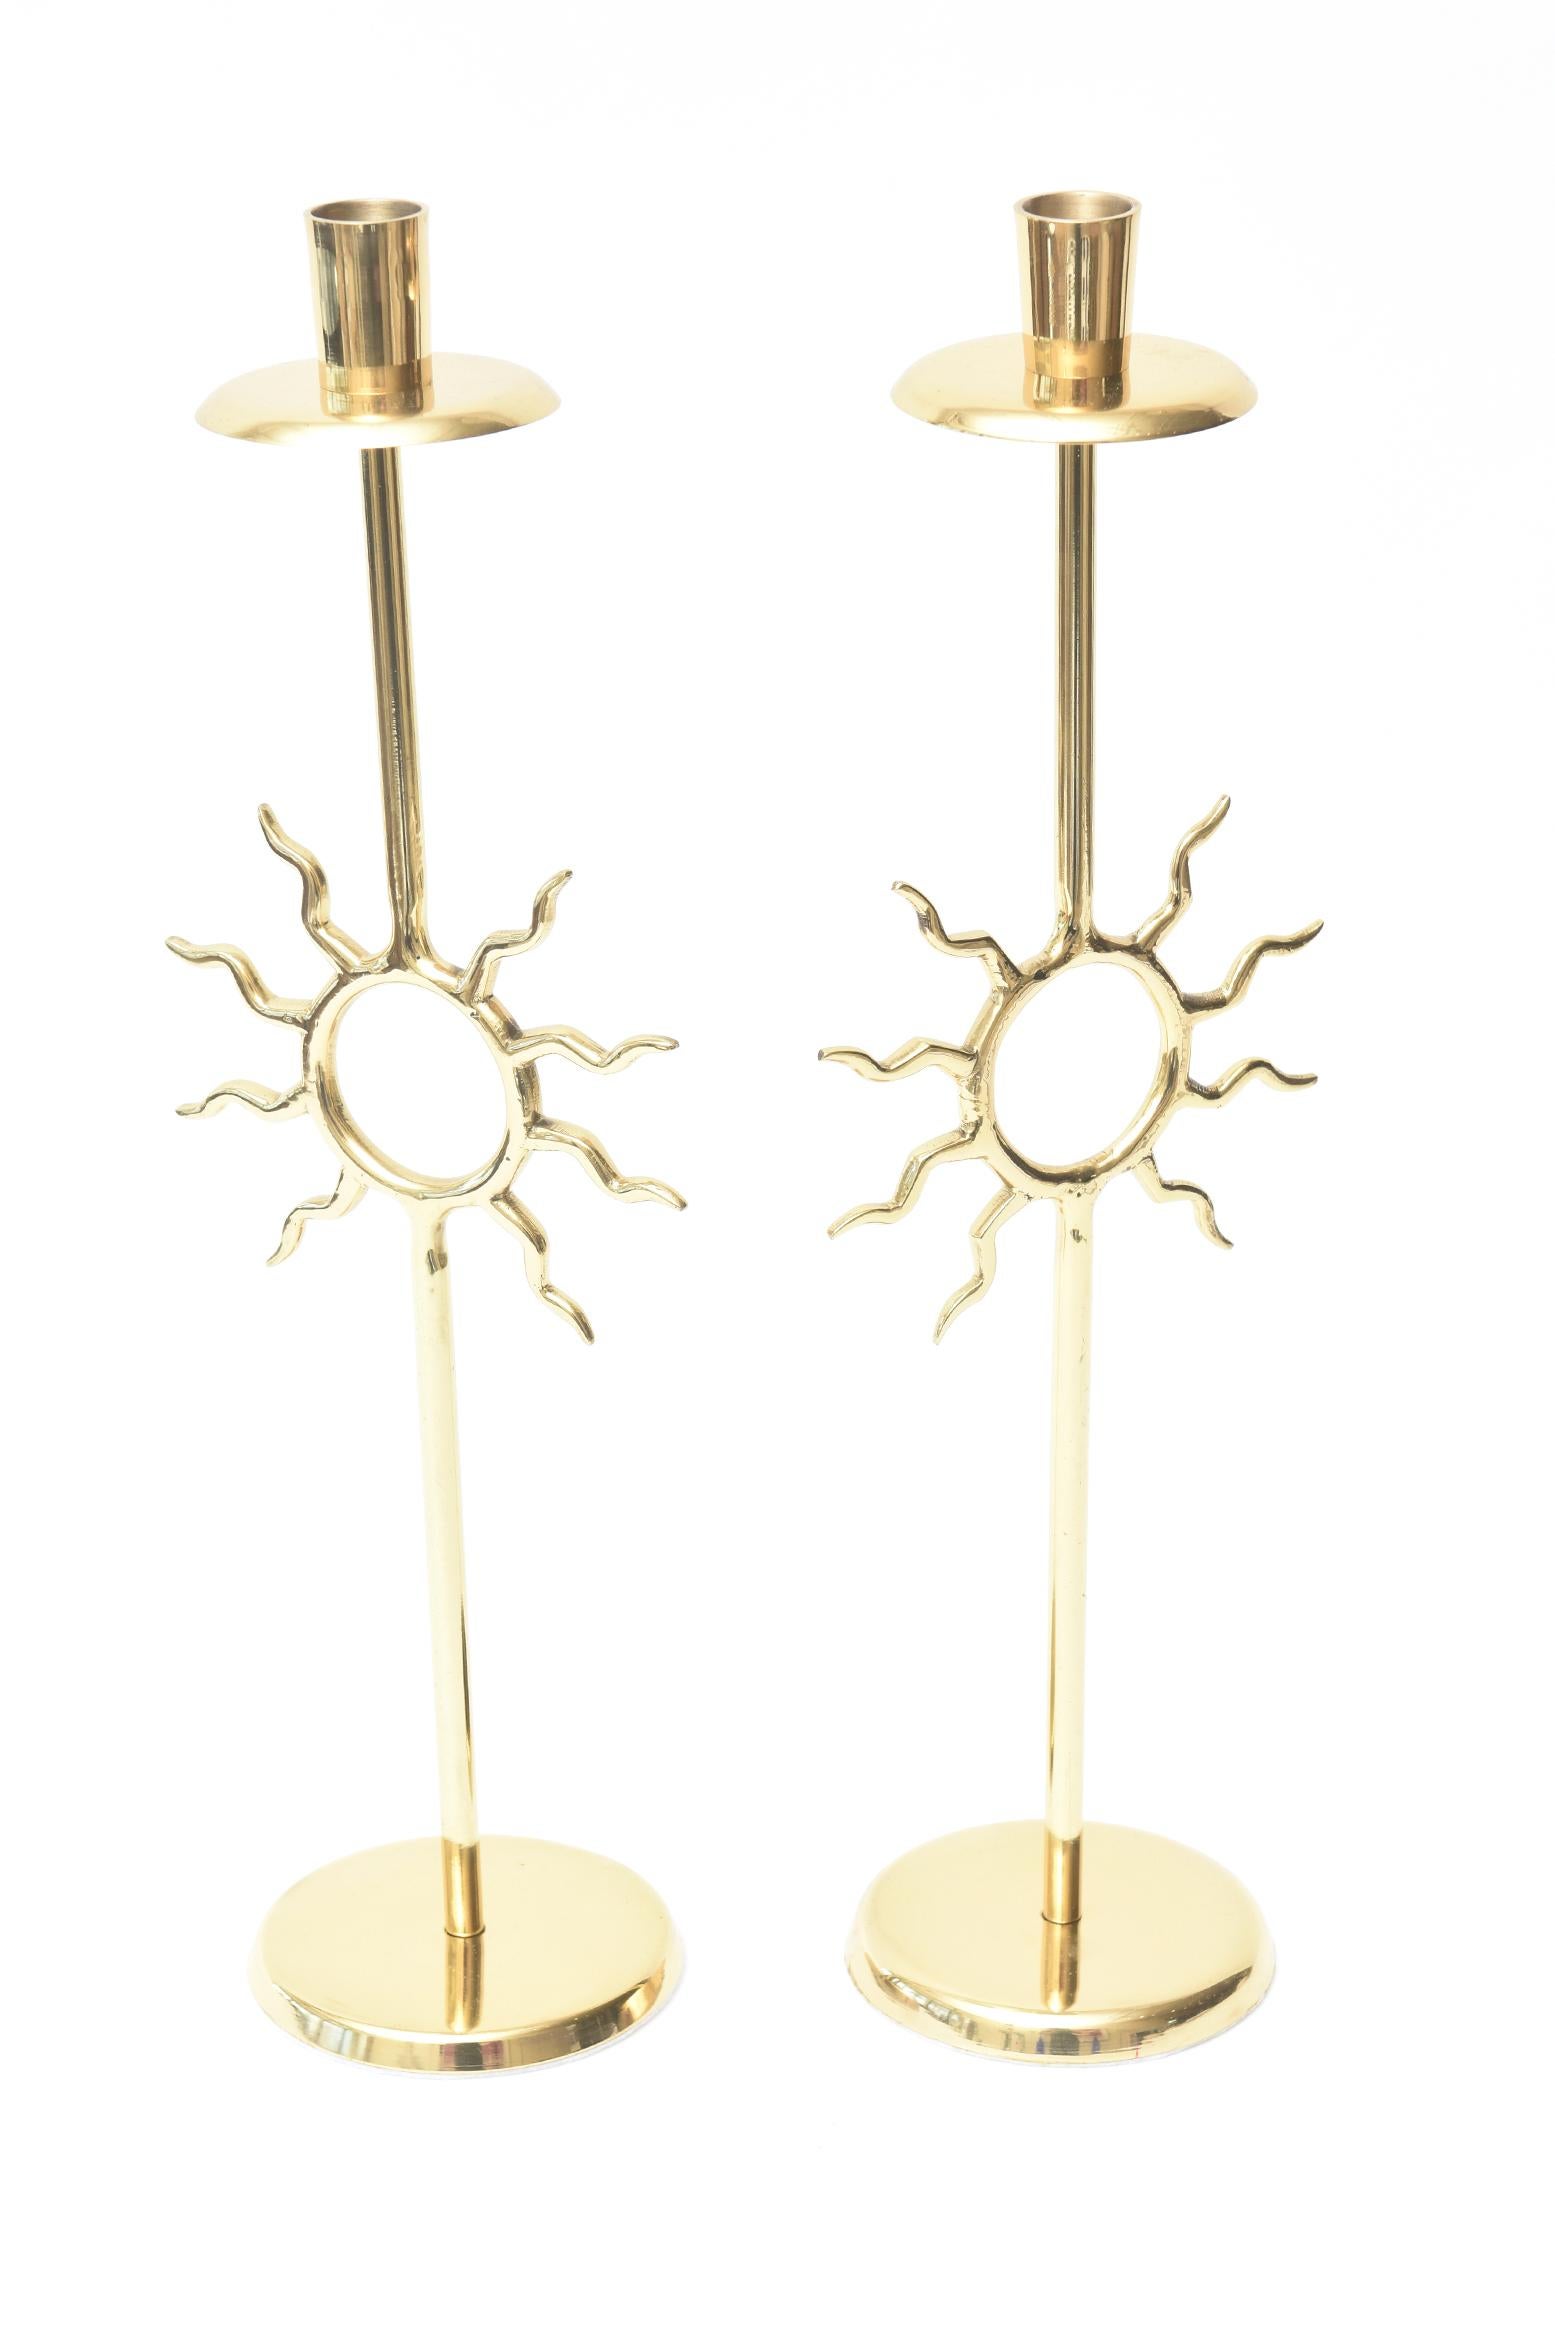 Cette magnifique paire de chandeliers vintage en laiton est d'un style très Fornasetti avec un peu de fantaisie à la Tony Duquette. Le motif du soleil apporte le bonheur. Ils datent des années 1970. Elles ont été professionnellement polies et leur